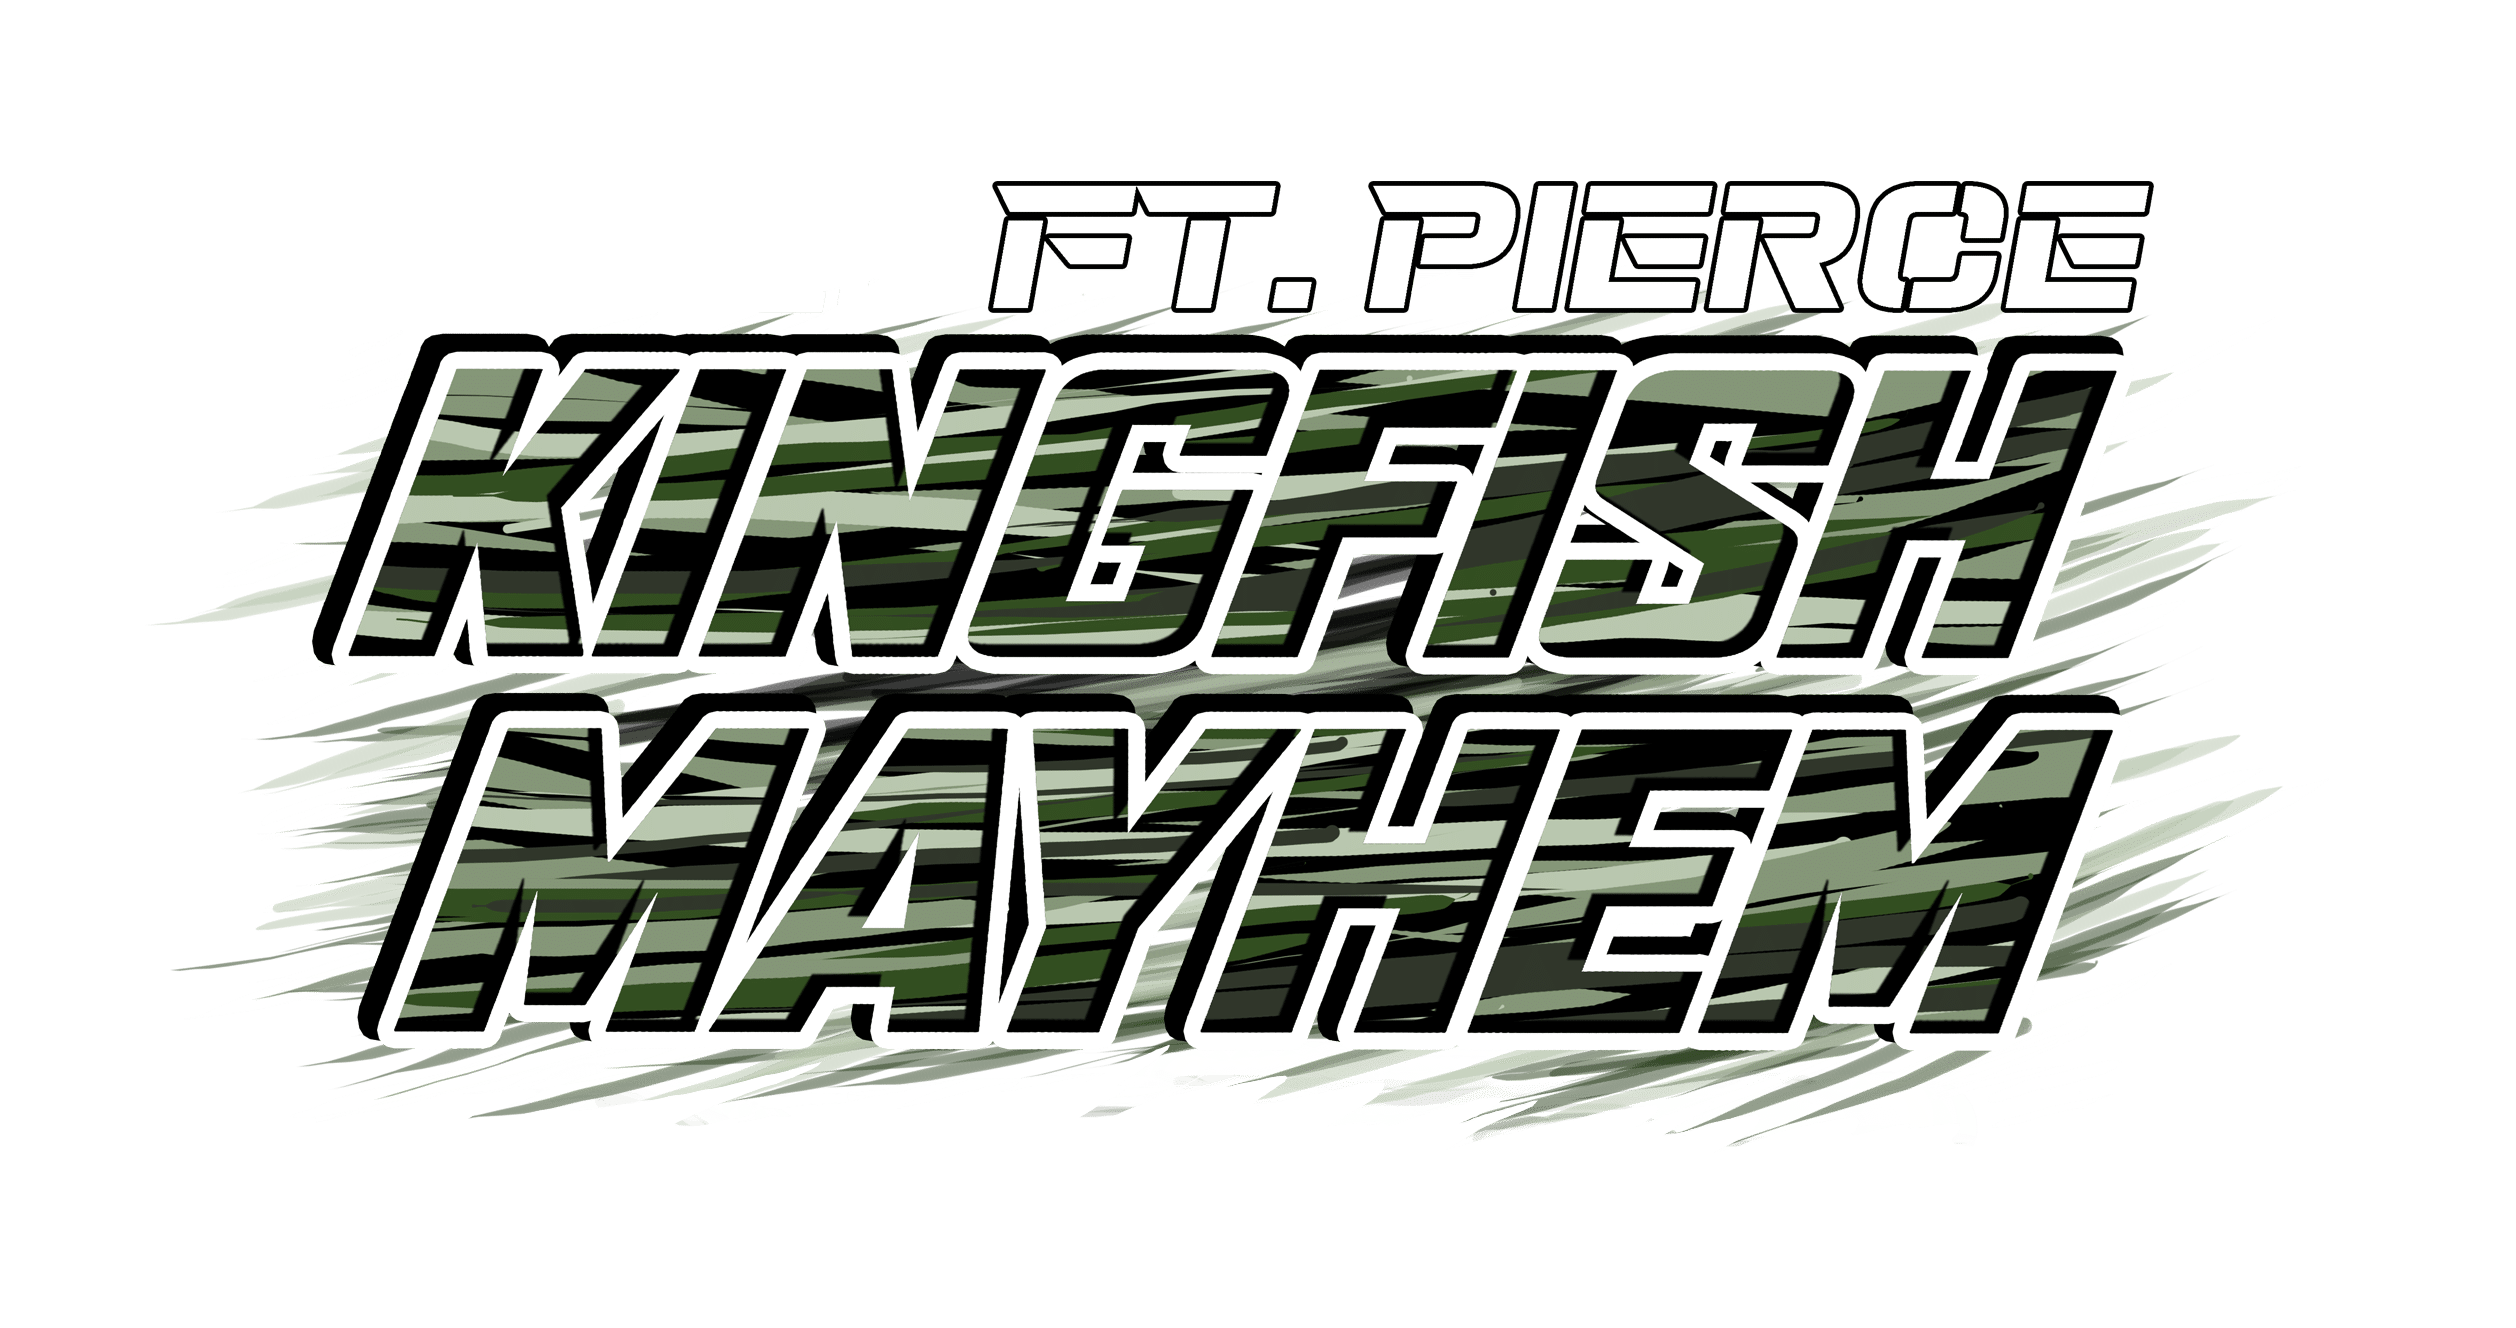 fort pierce kingfish mayhem